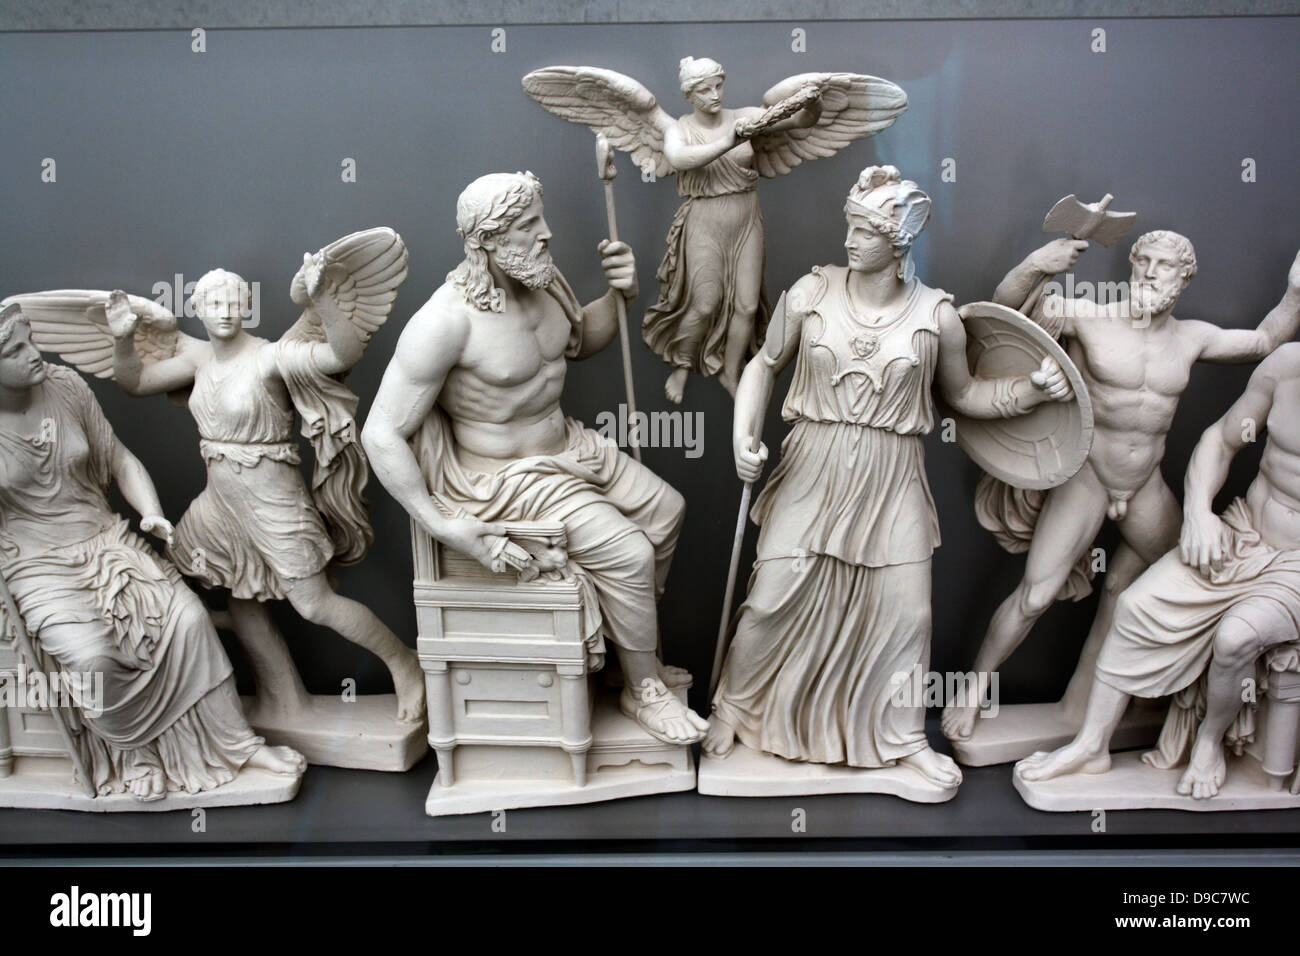 La ricostruzione del frontone orientale del Partenone secondo un disegno da K. Schwerzek. Il frontone orientale narra la nascita di Atena dalla testa di suo padre Zeus. Foto Stock